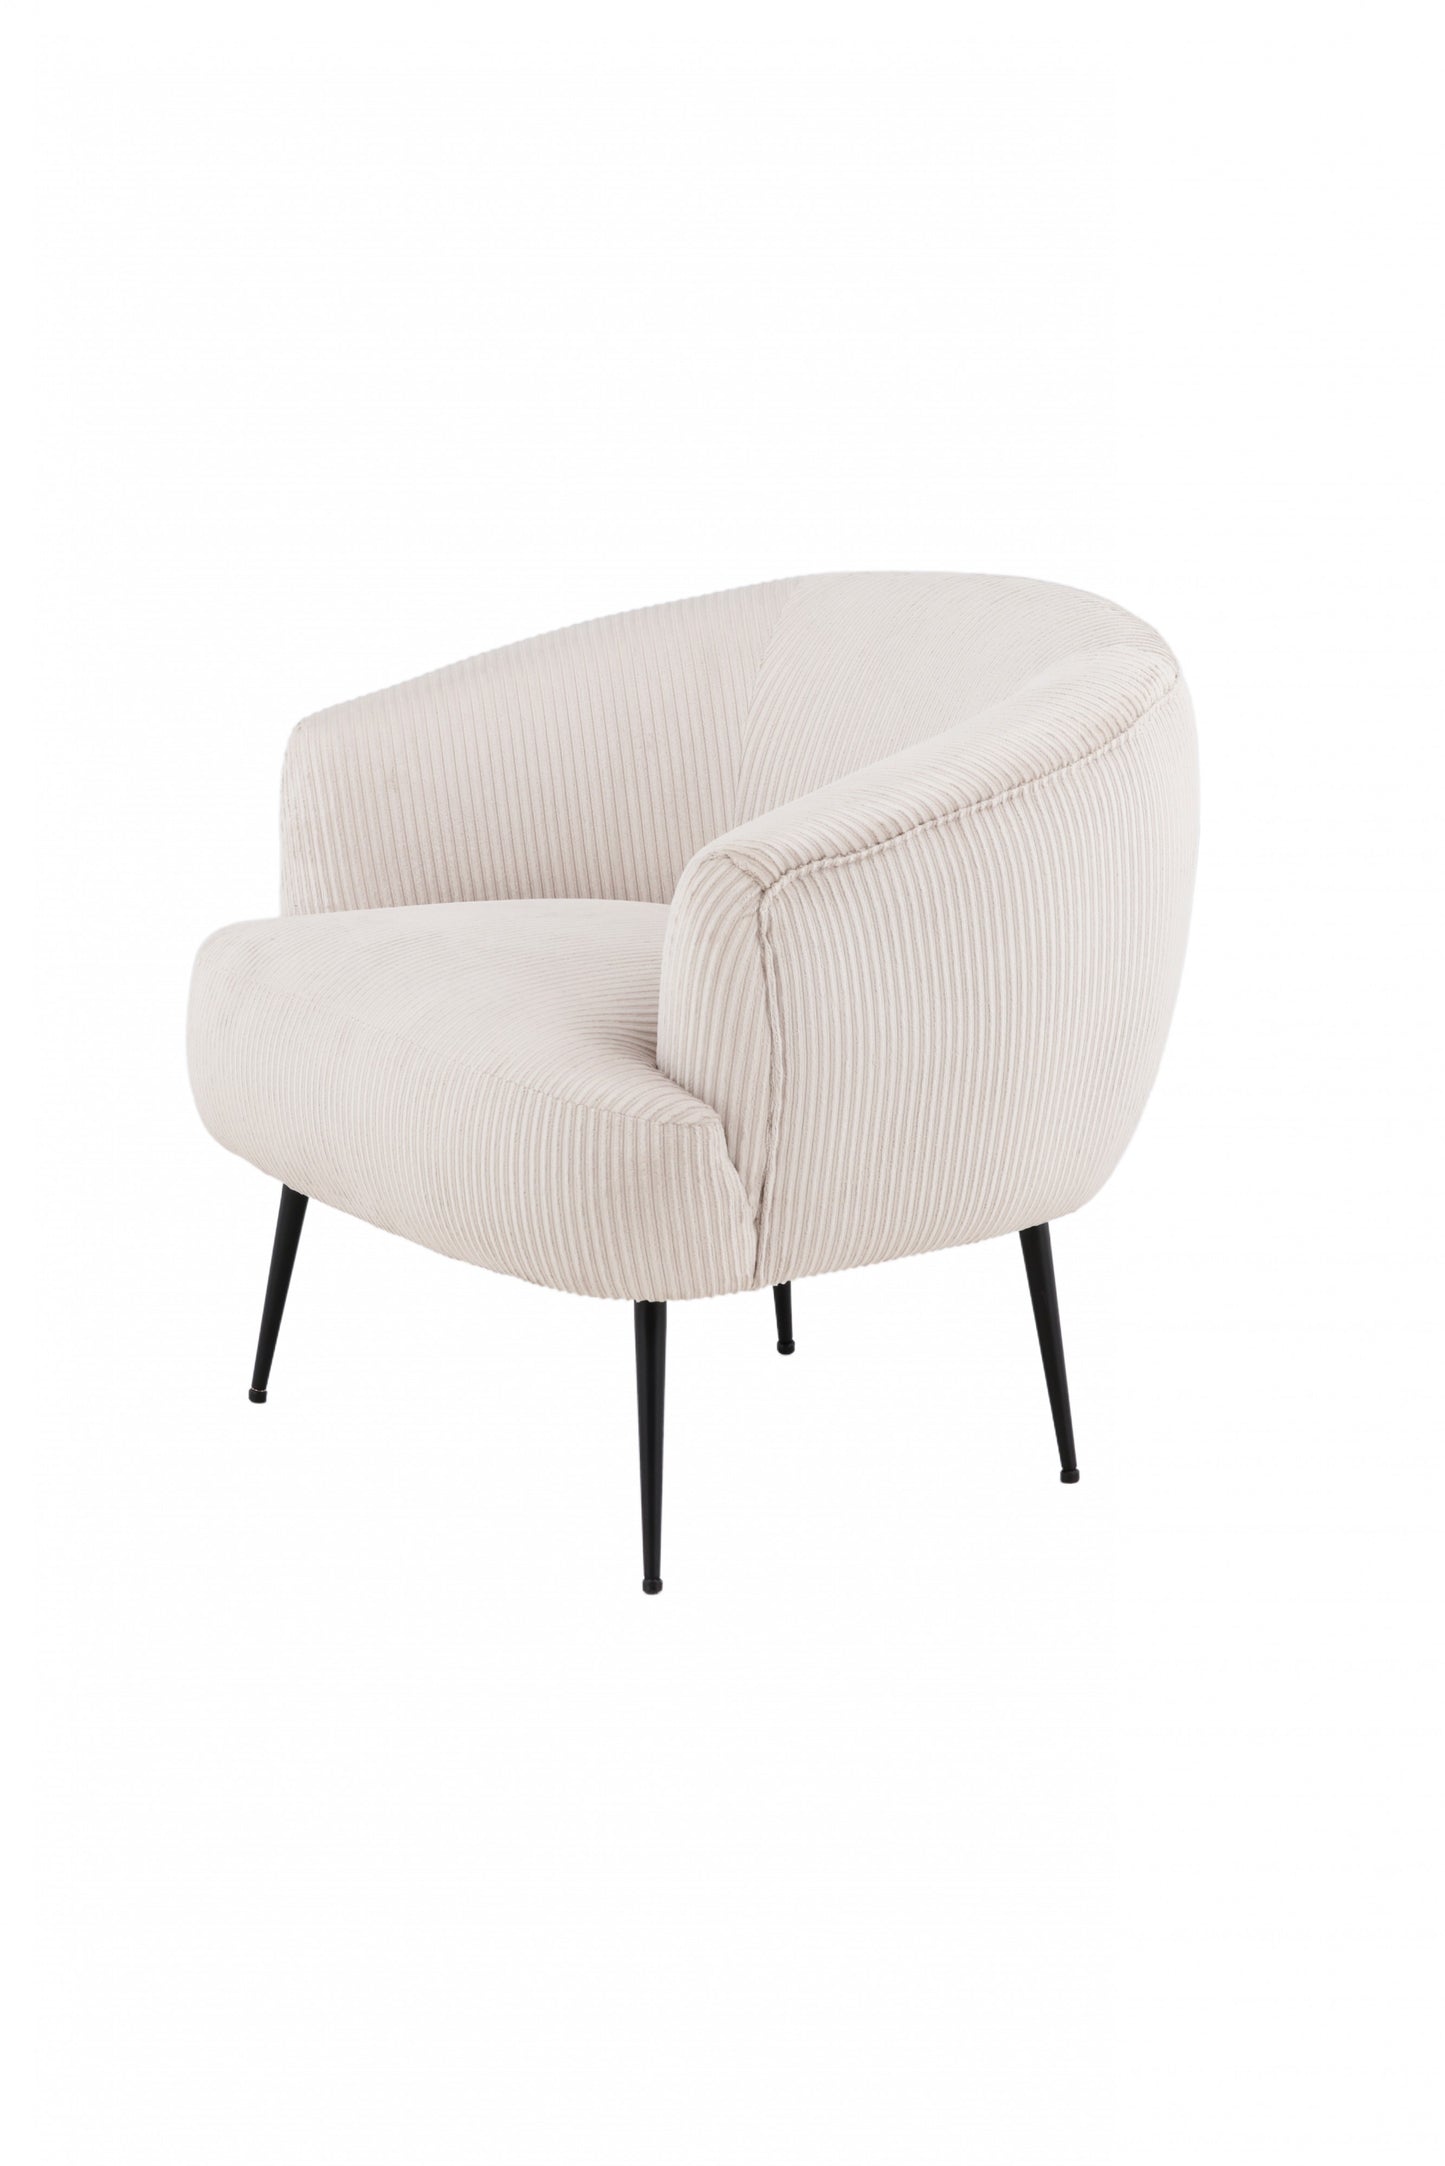 Venture Design | Derry Lounge Chair - Svart / Beige Manchester